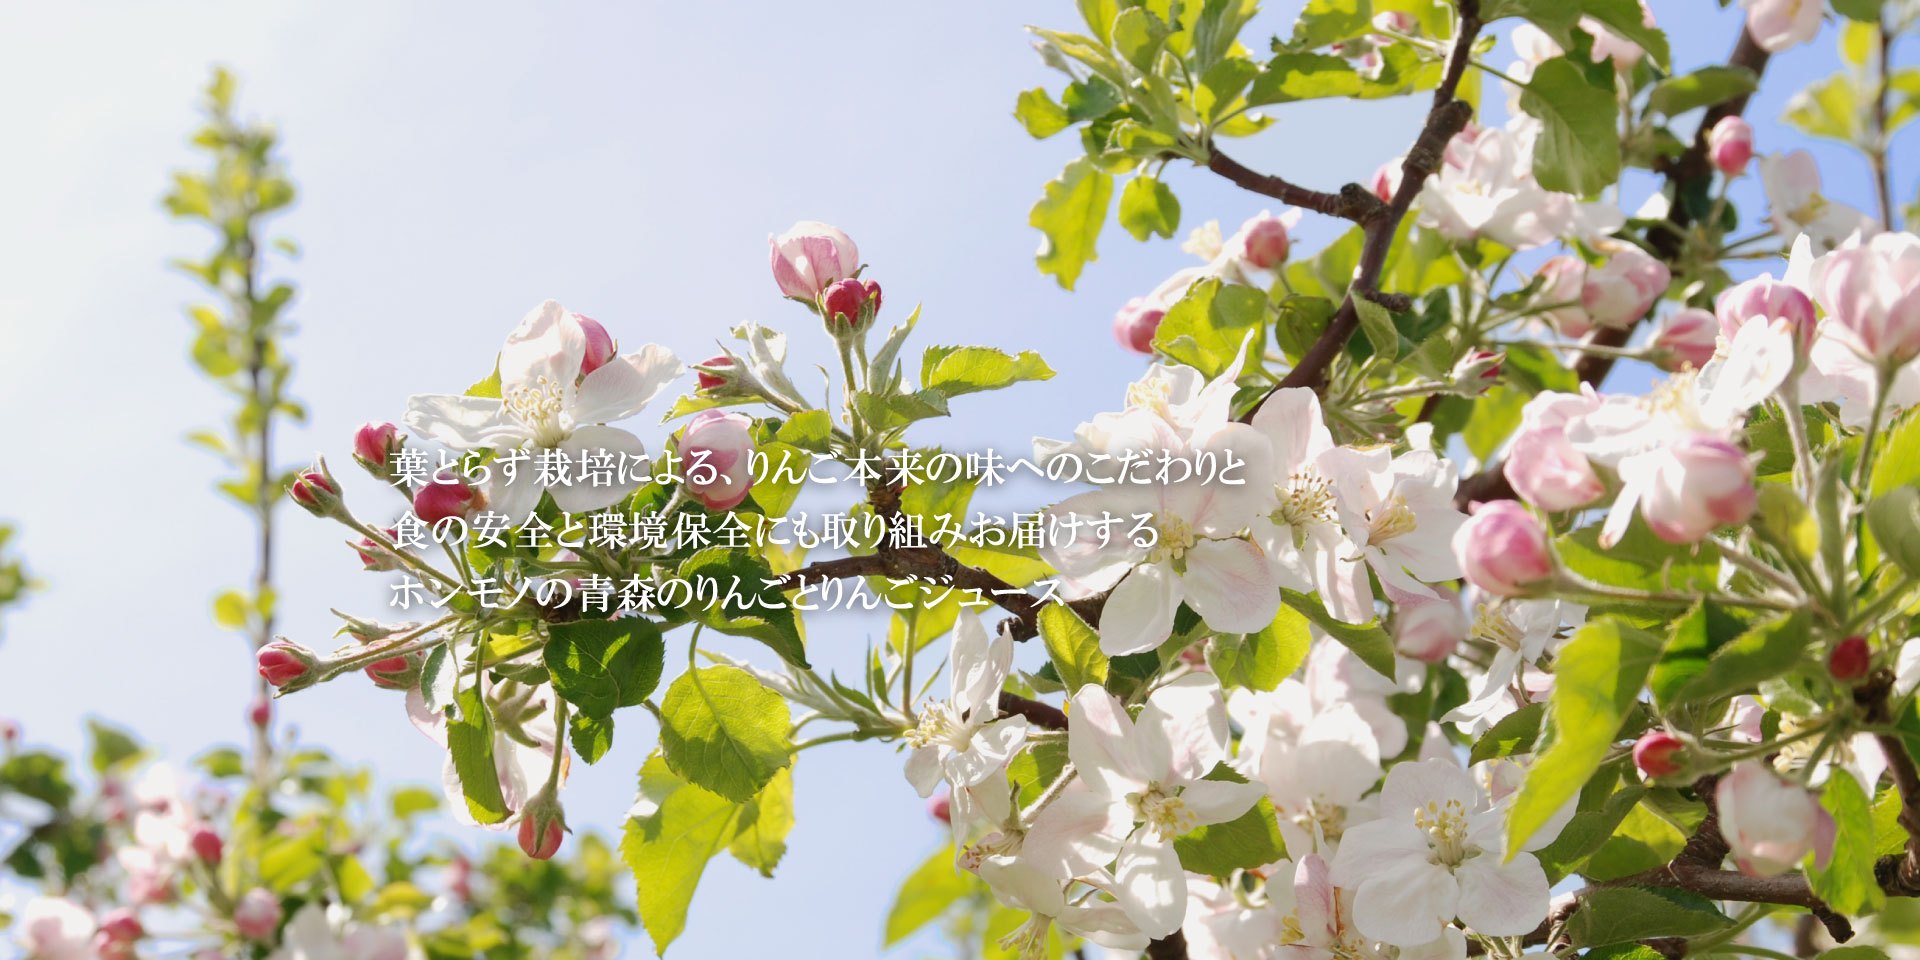 青森の葉とらずりんご HAPPYHAPPAメインイメージ3